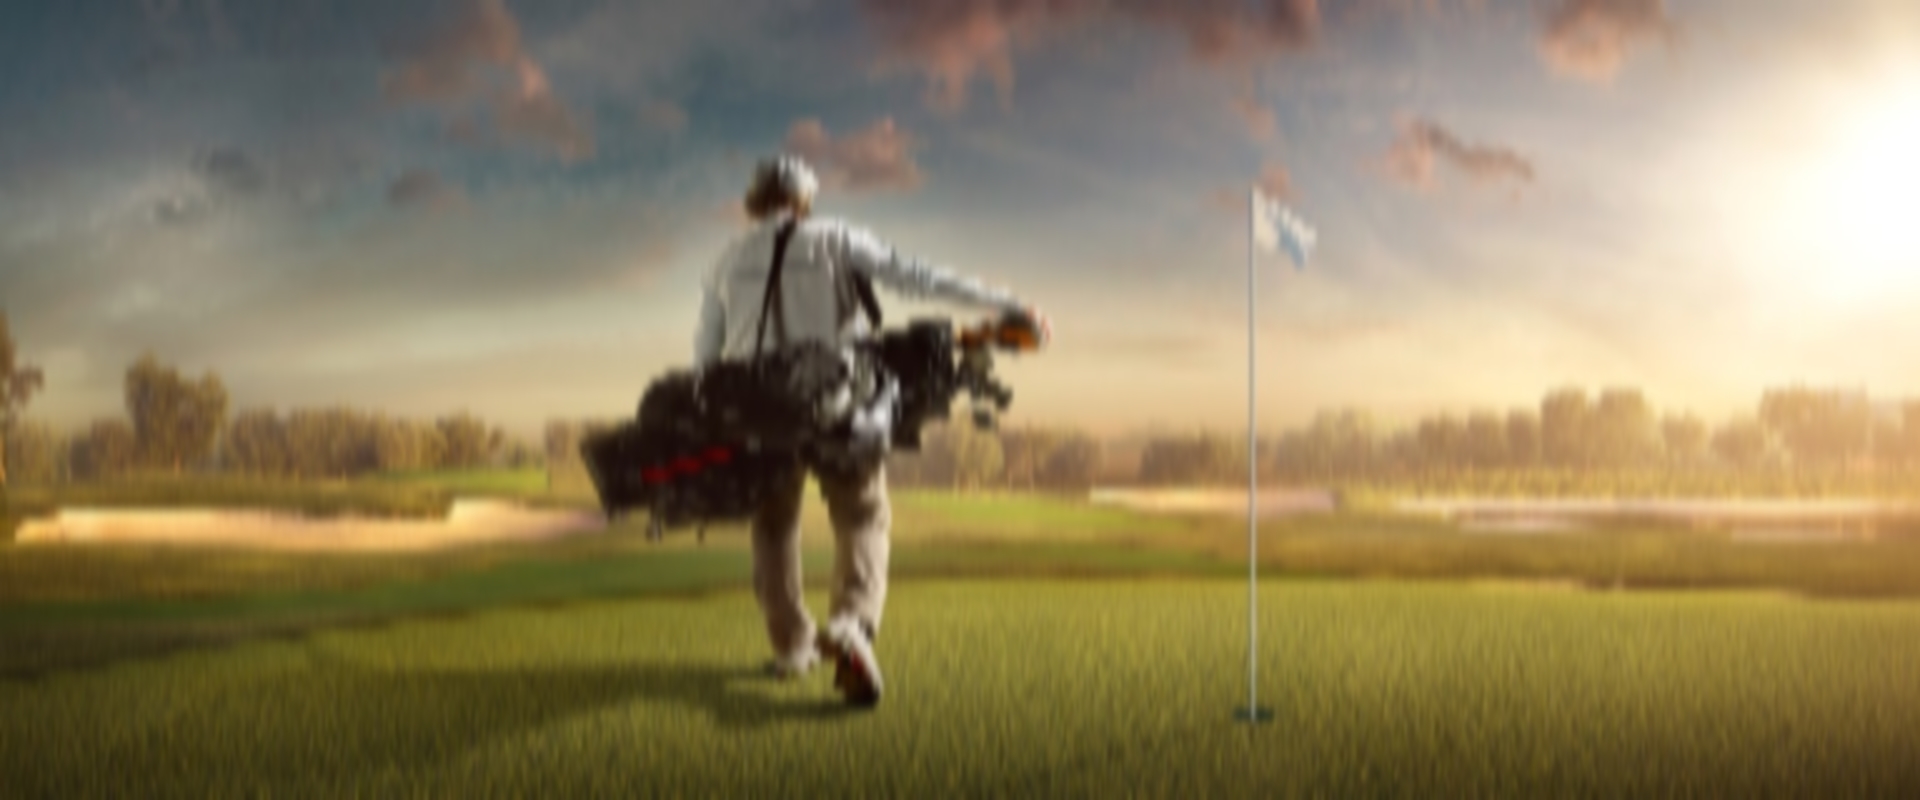 Die Hochschule für angewandtes Management (HAM) kooperiert mit der Professional Golfers Association (PGA) und startet ein gemeinsames Studienprogramm.